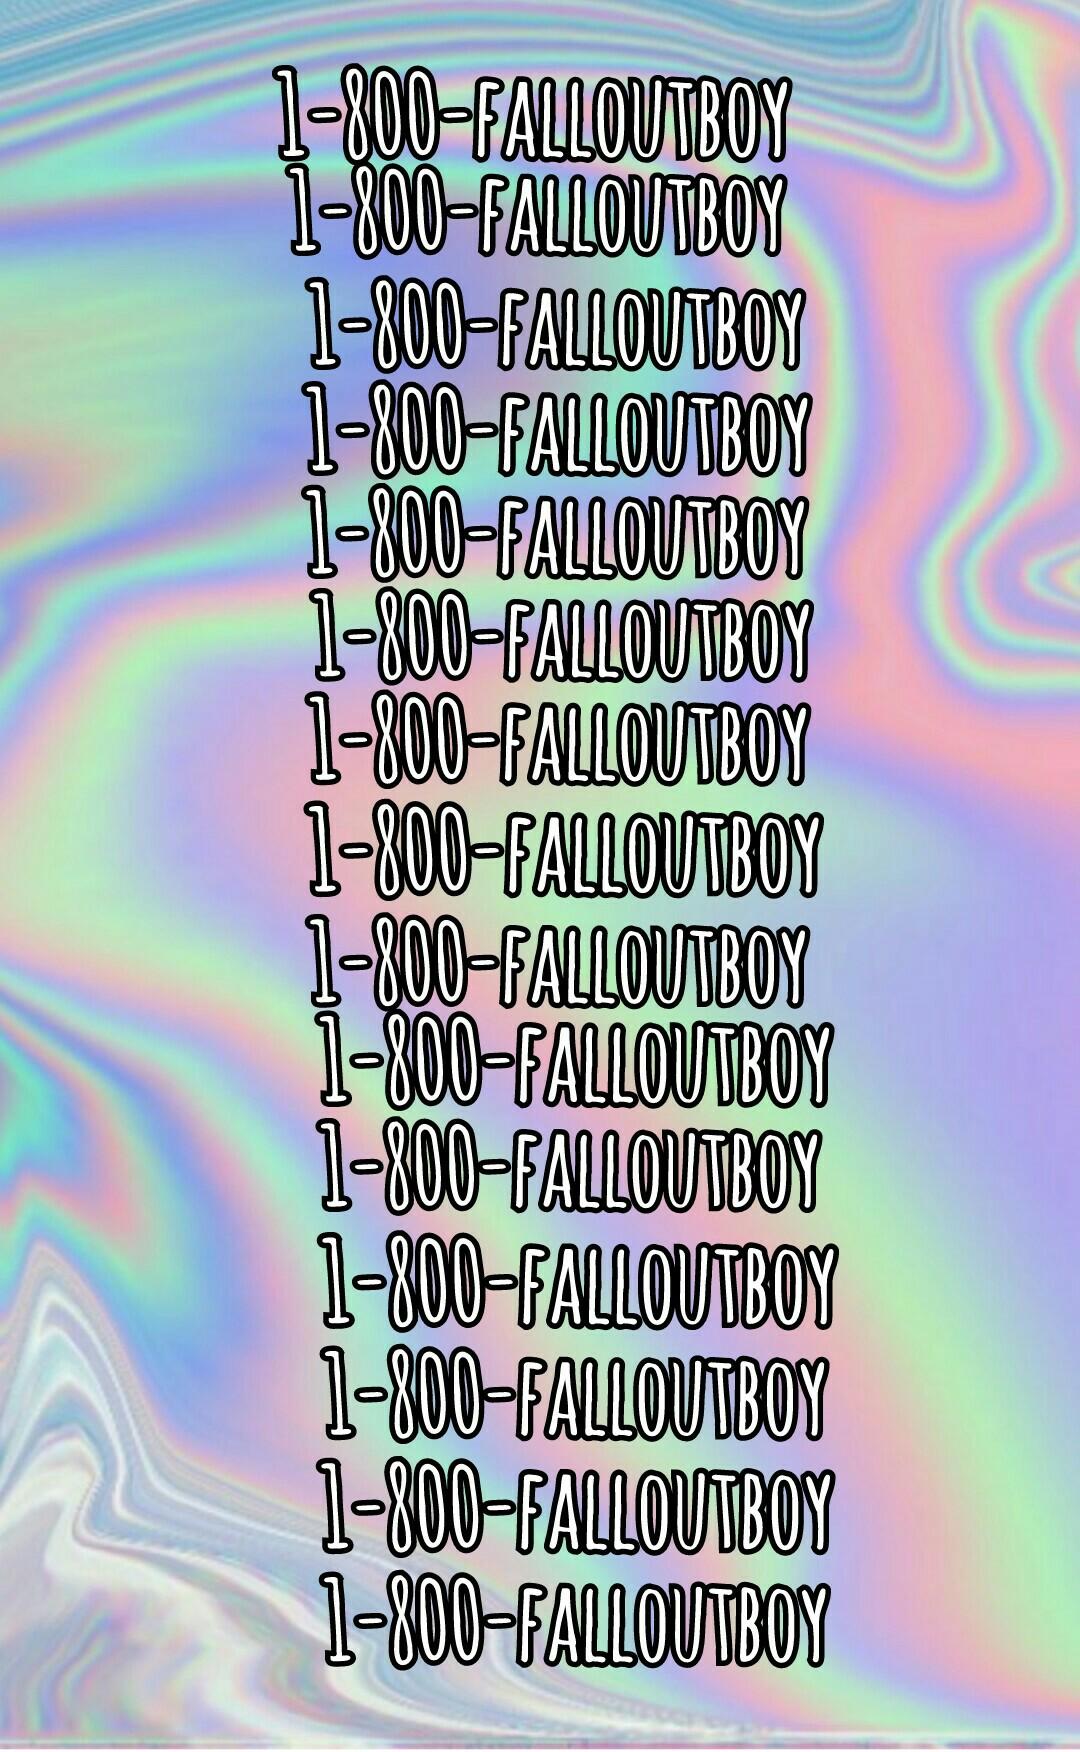 1-800-falloutboy